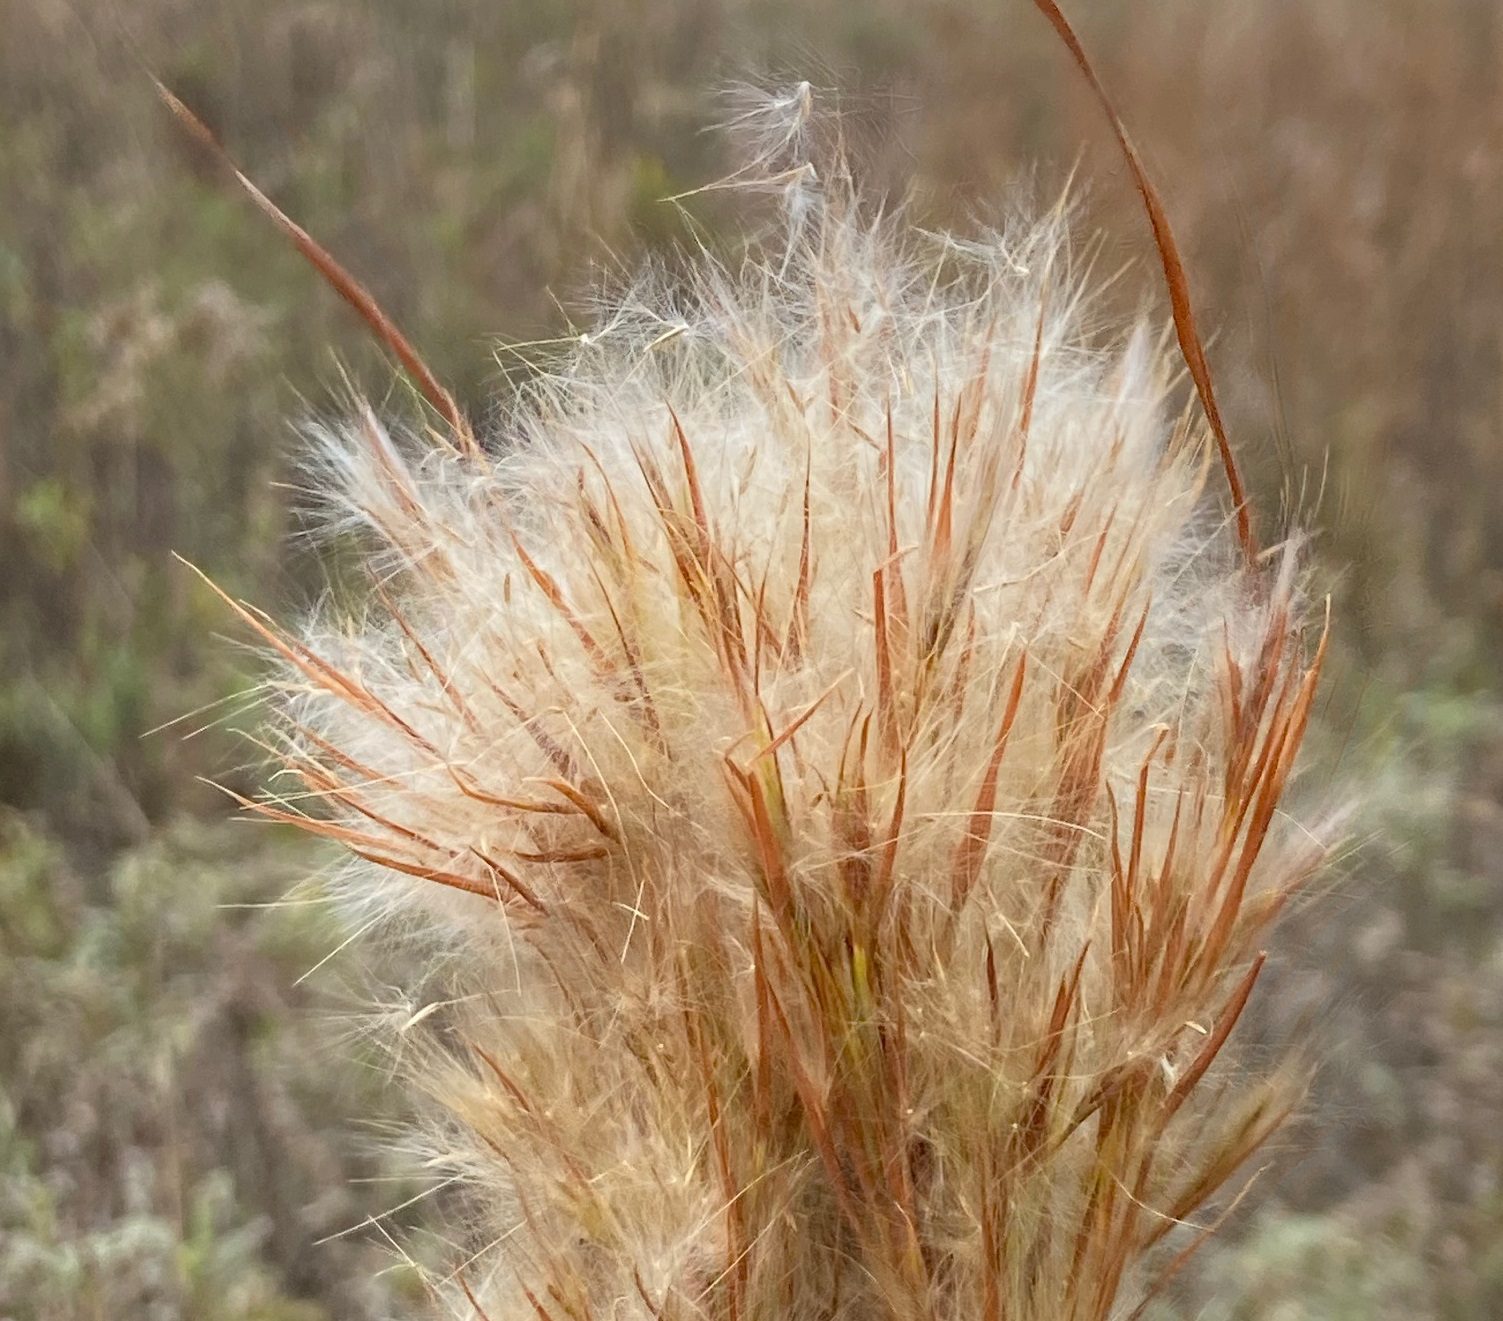 Bluestem grass in seed